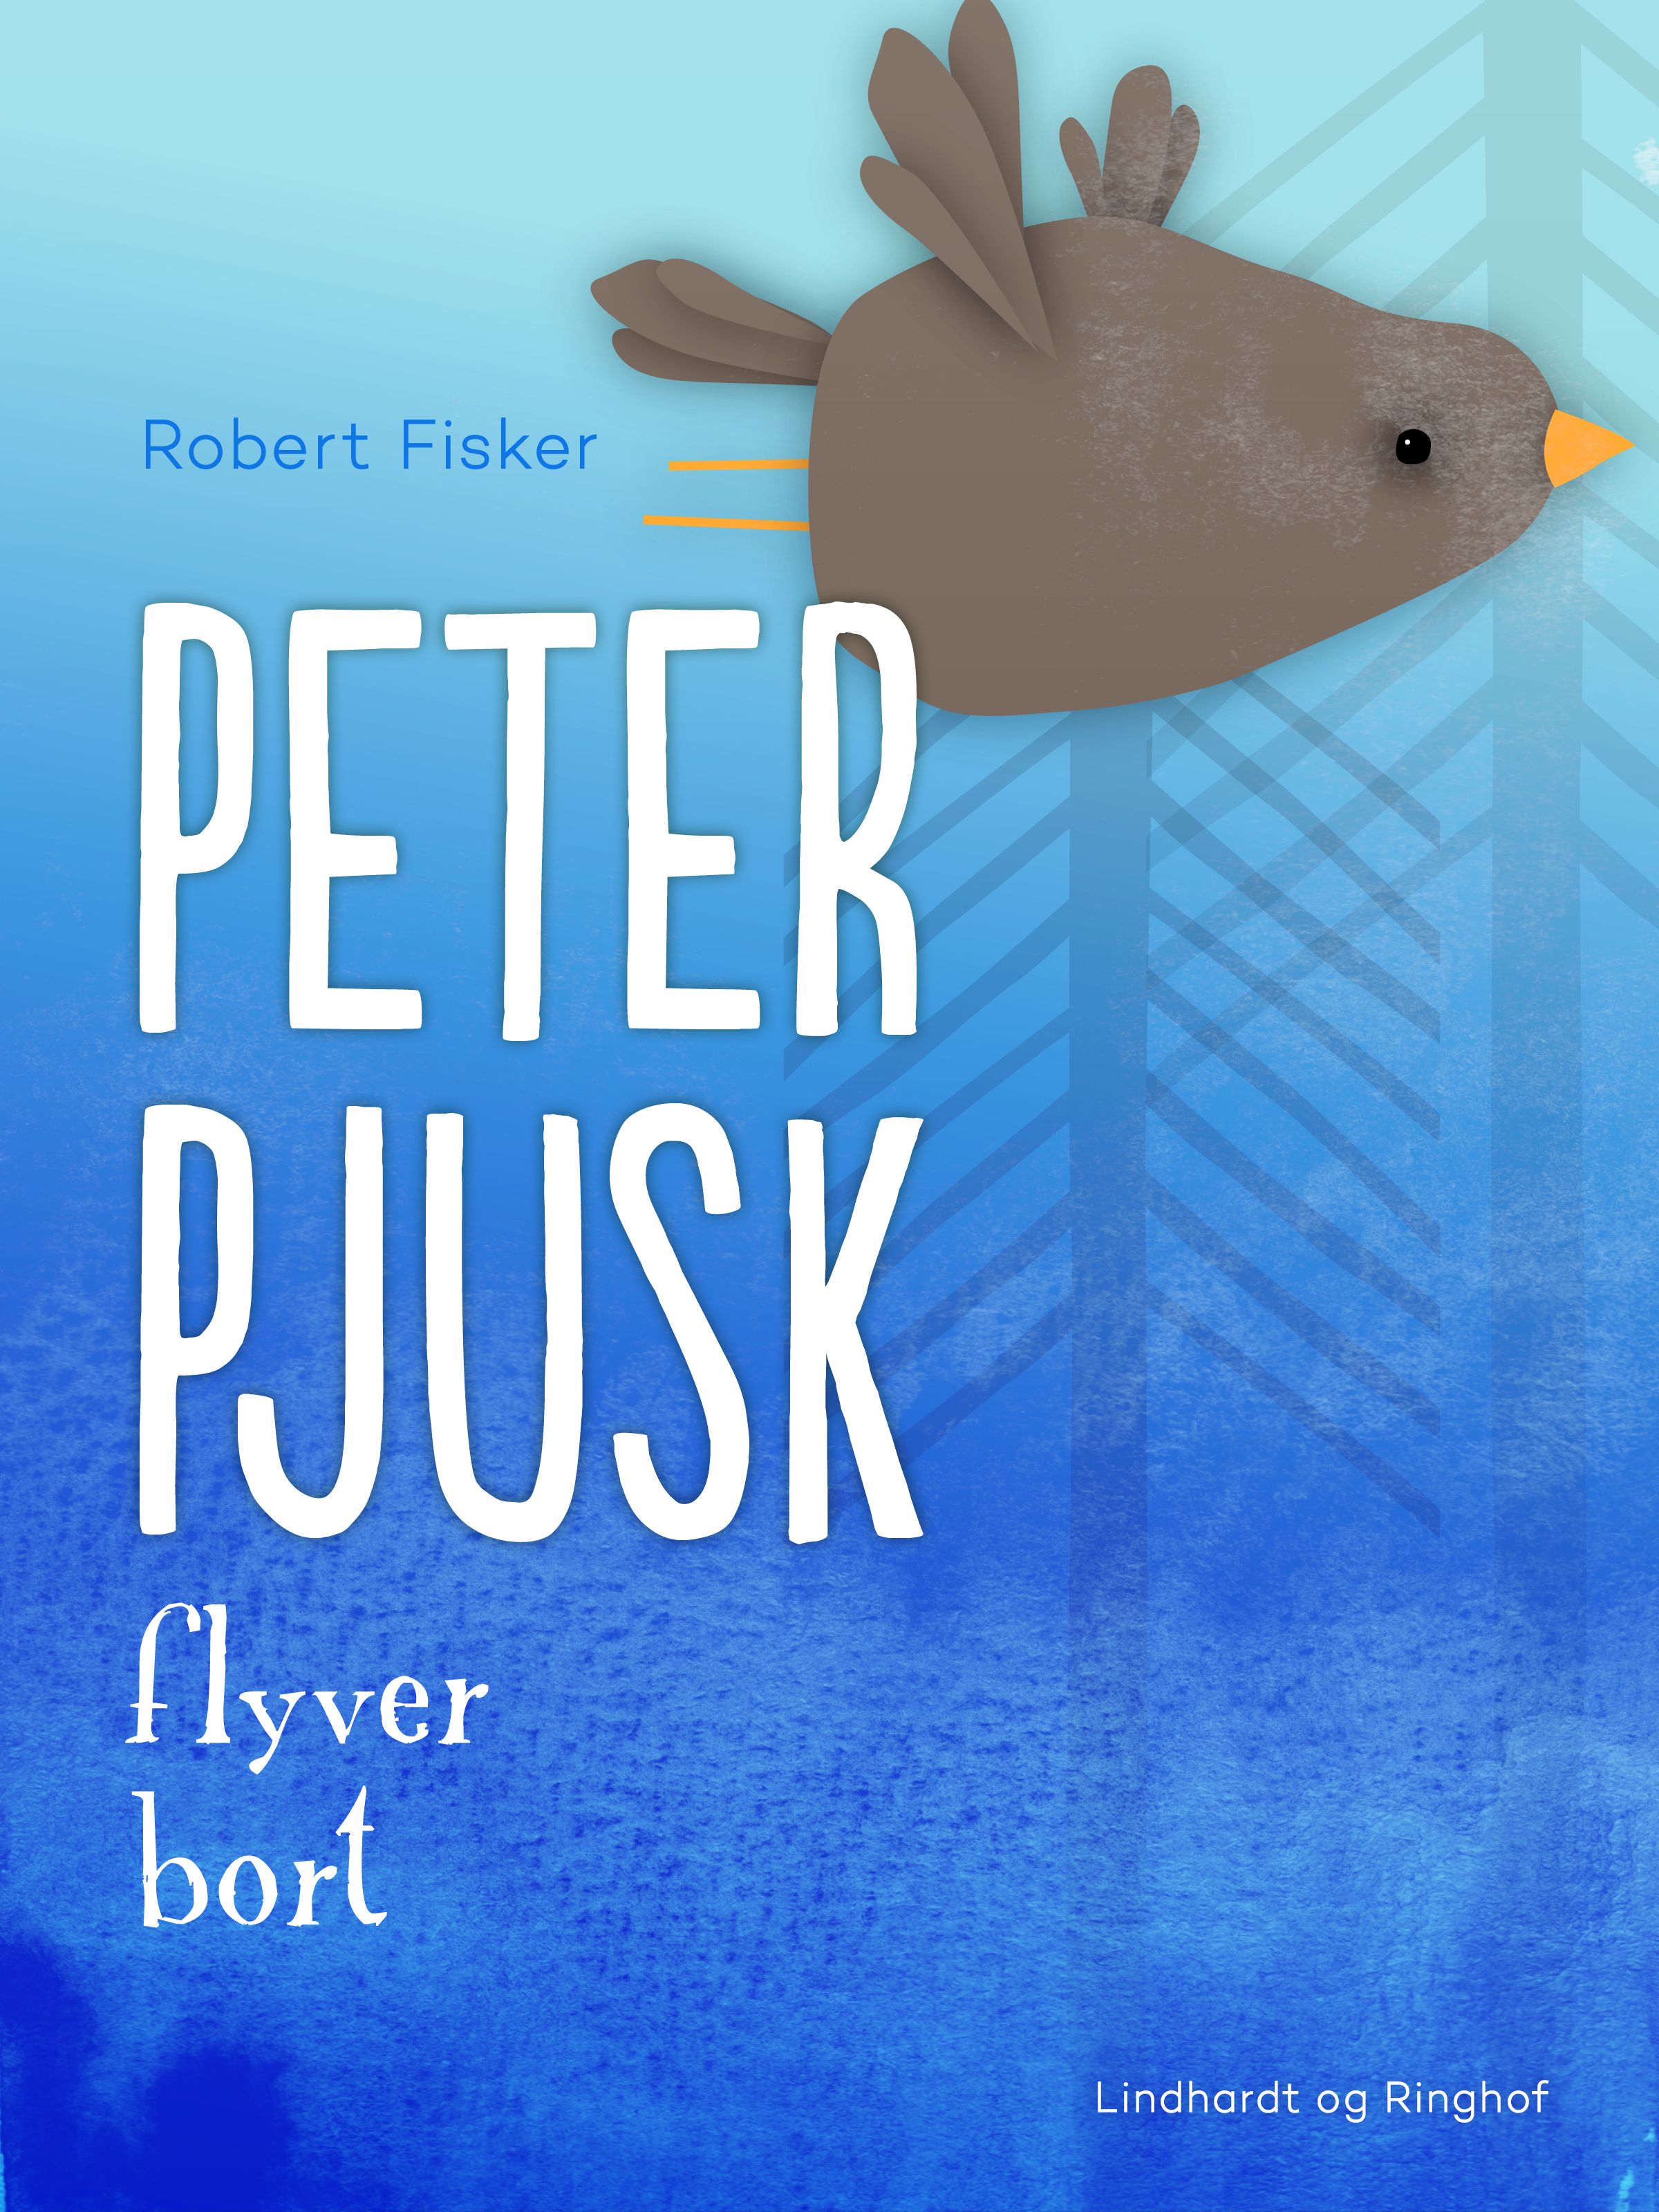 Peter Pjusk flyver bort, lydbog af Robert Fisker